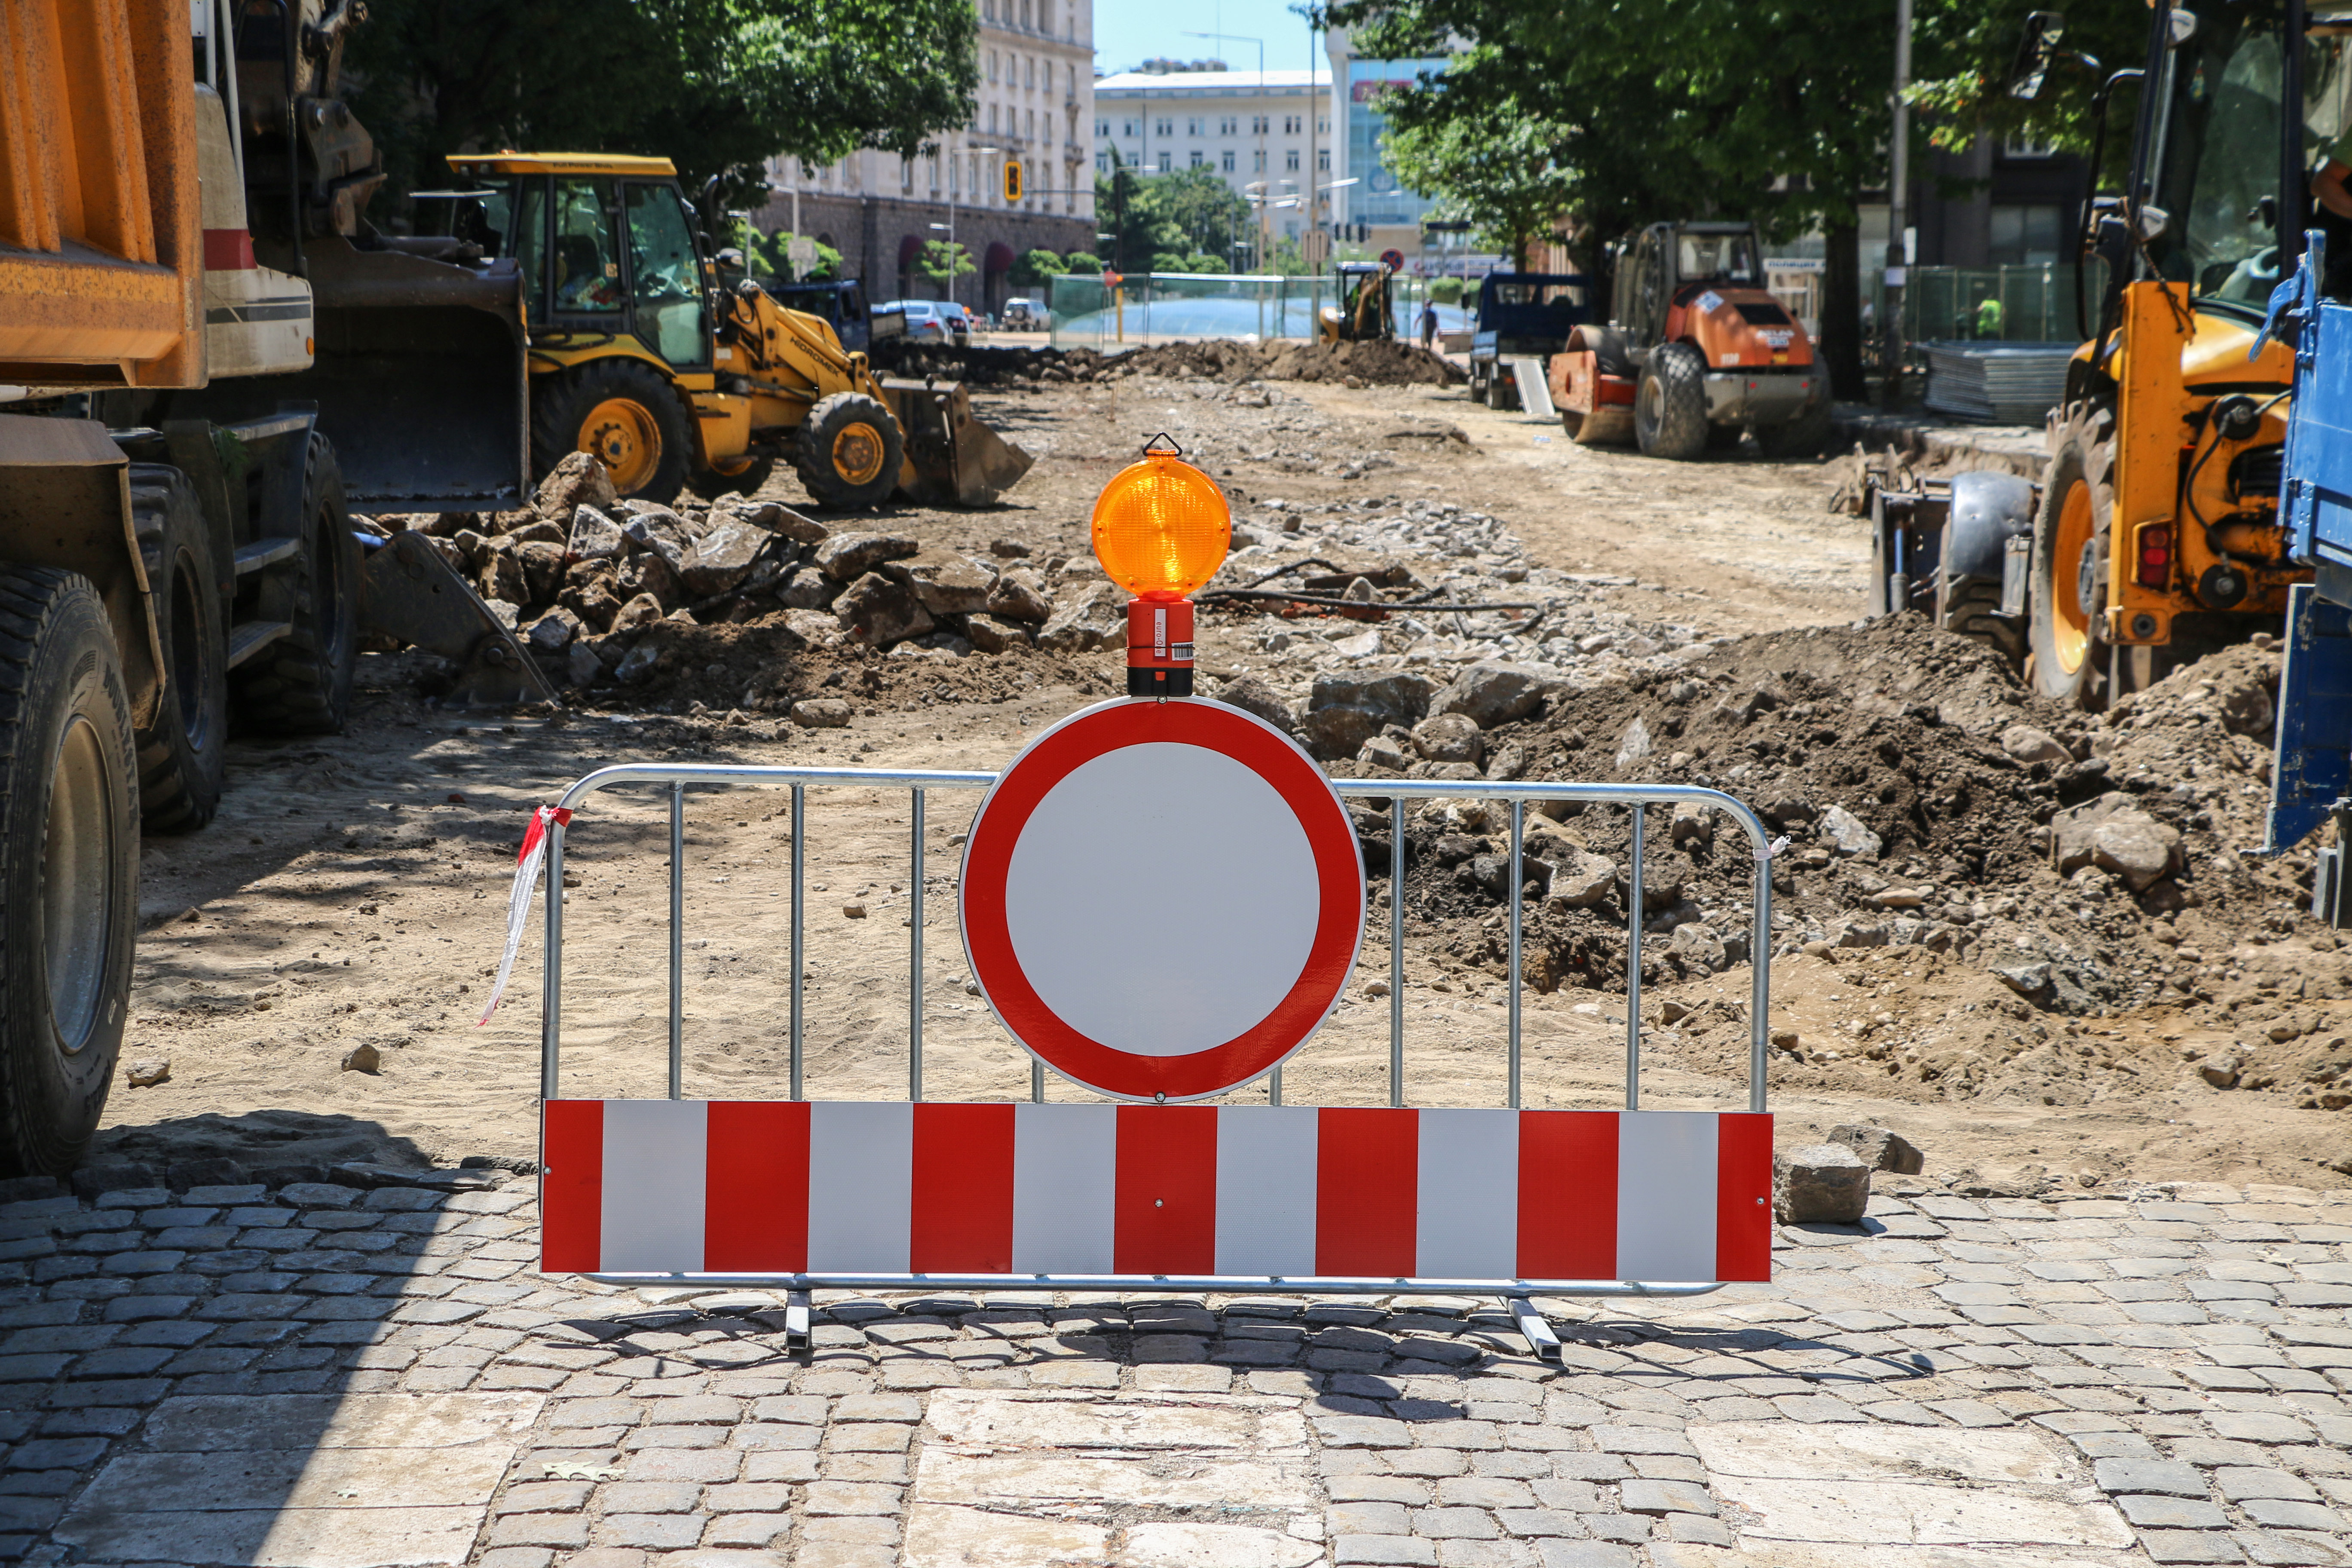 След ремонта на бул. ”Дондуков” ще се получи добре, изрази увереност кметът на София